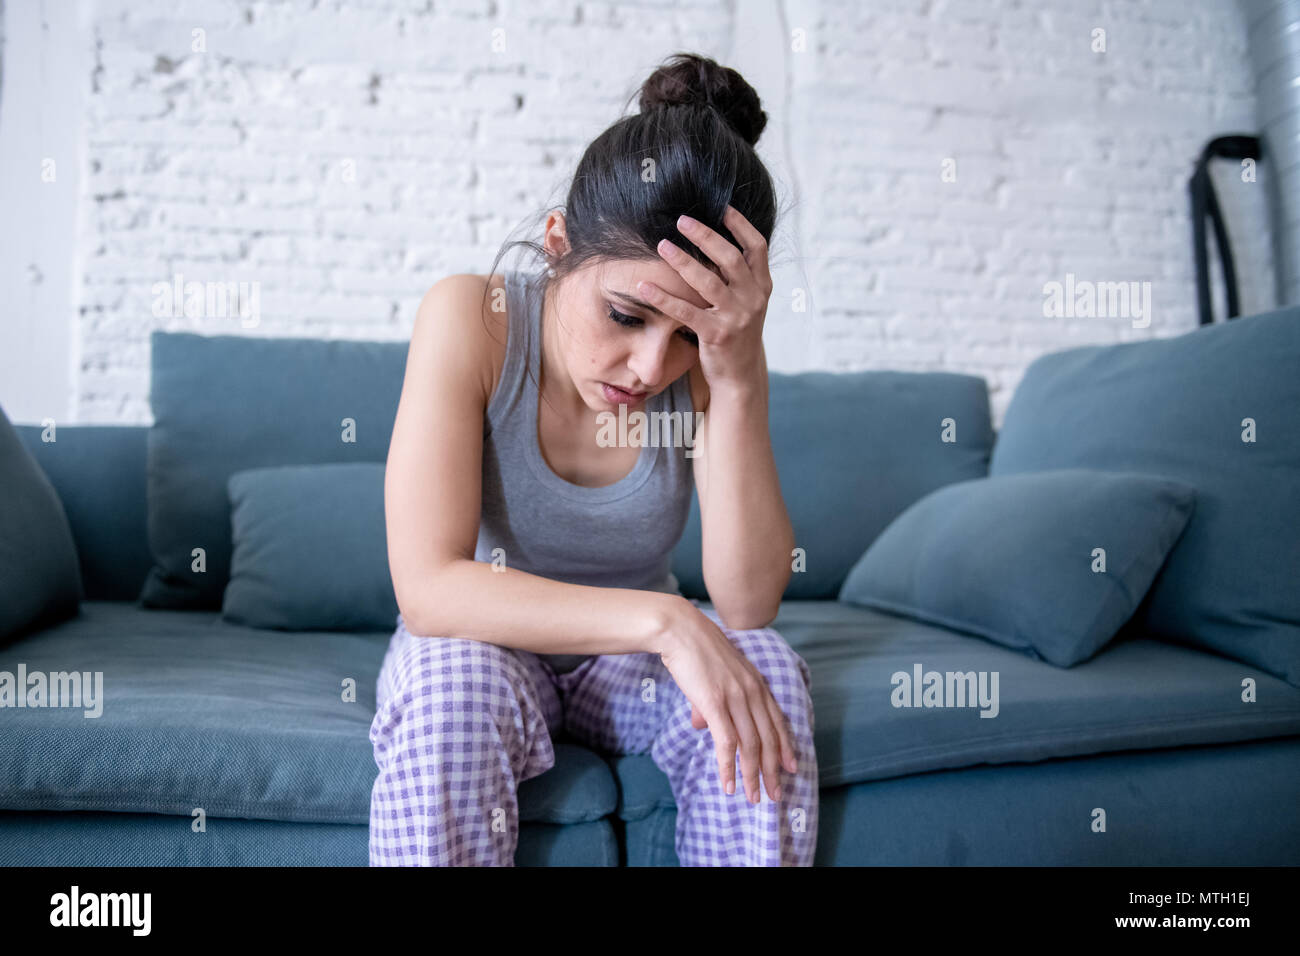 Schönen lateinischen gedrückt einsame Frau starrte traurig, Schmerzen, Trauer zu Hause auf Ihrem Sofa. Krise, Depression und psychische Gesundheit Konzept Stockfoto